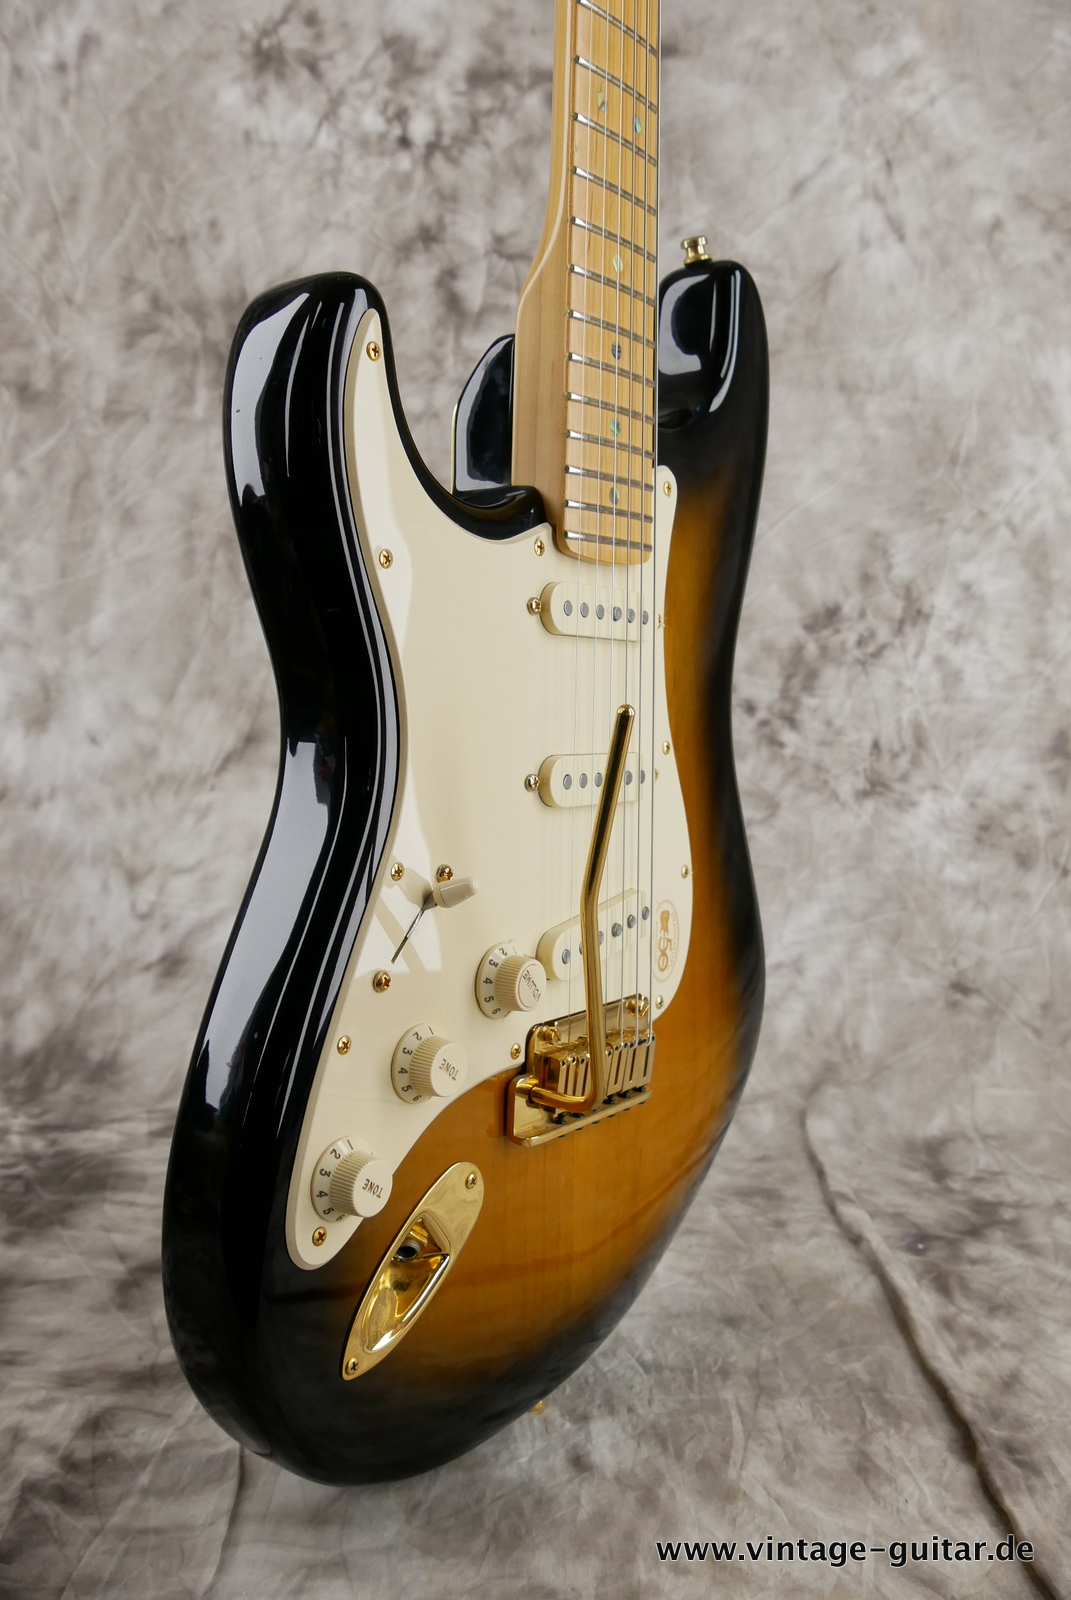 Fender_Stratocaster_deluxe_50th_anniversary__left_hand_sunburst_tweed_case_2004-009.JPG